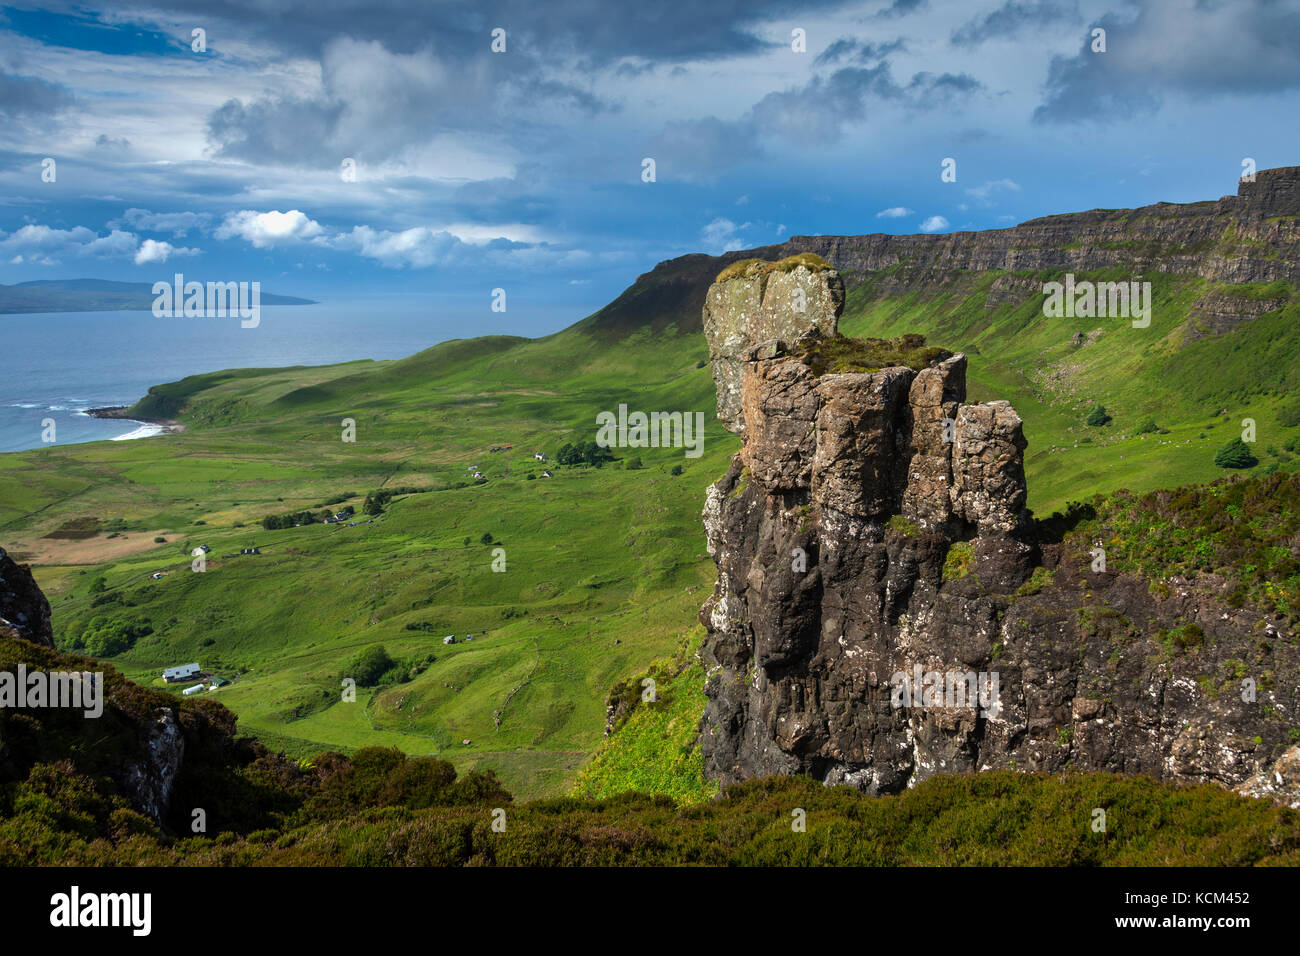 Les clifs sur le bord ouest du plateau Beinn Bhuidhe, du sommet de Bidean an Tighearna (le doigt de Dieu) , île d'Eigg, Ecosse, Royaume-Uni Banque D'Images